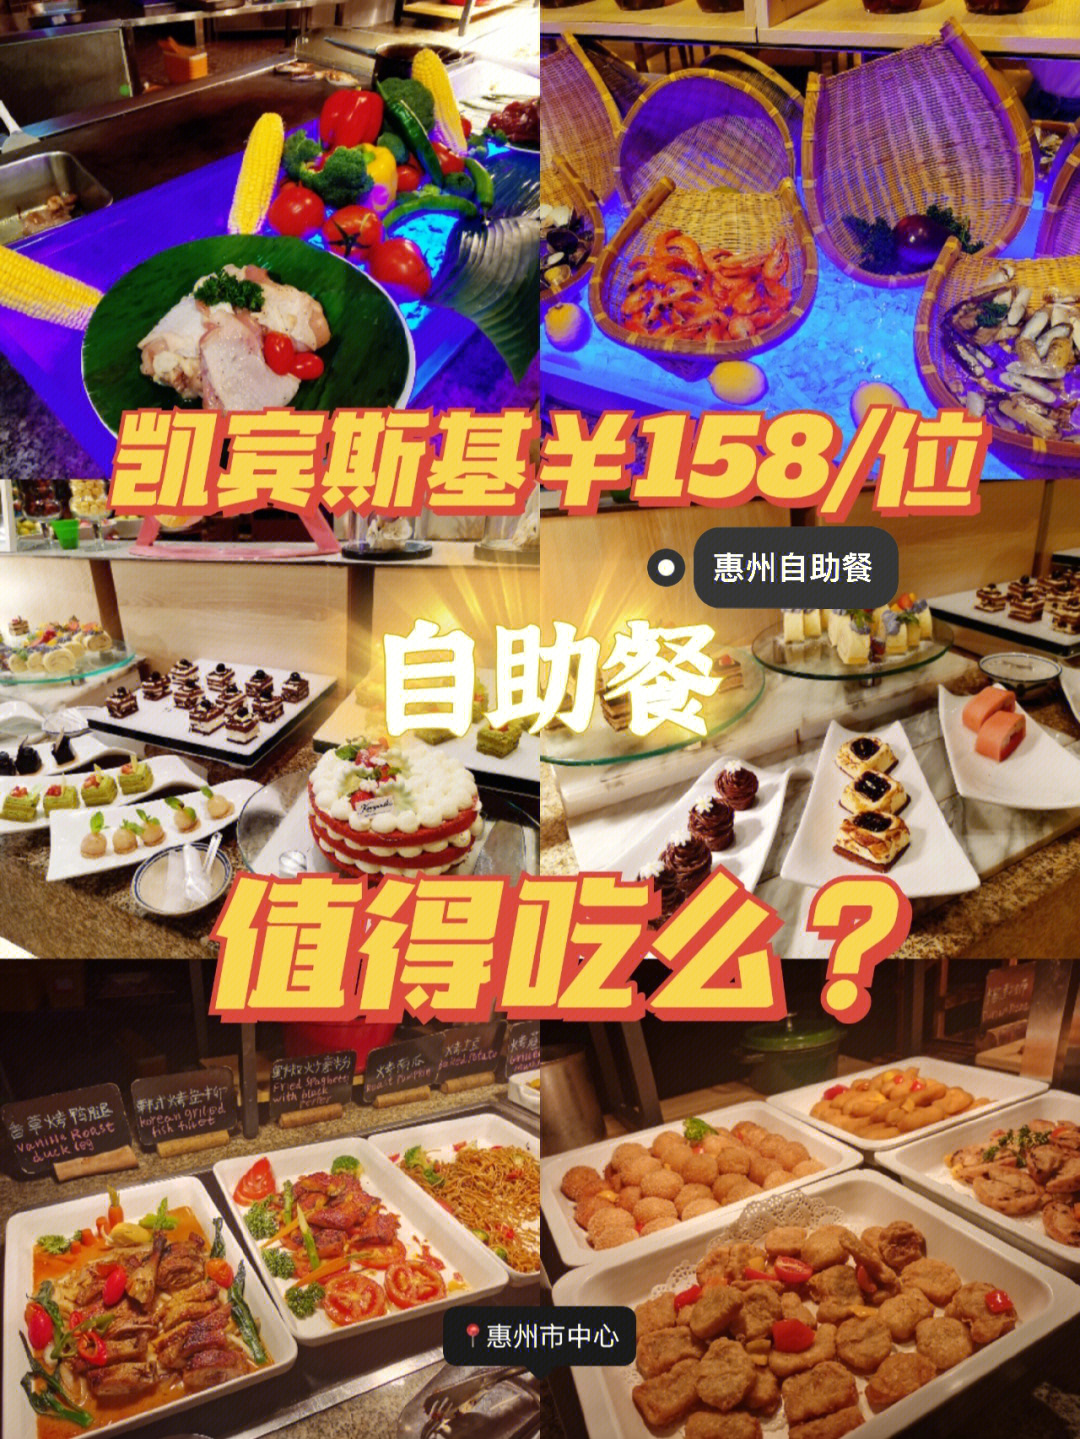 158元五星级自助餐值得吗惠州中心